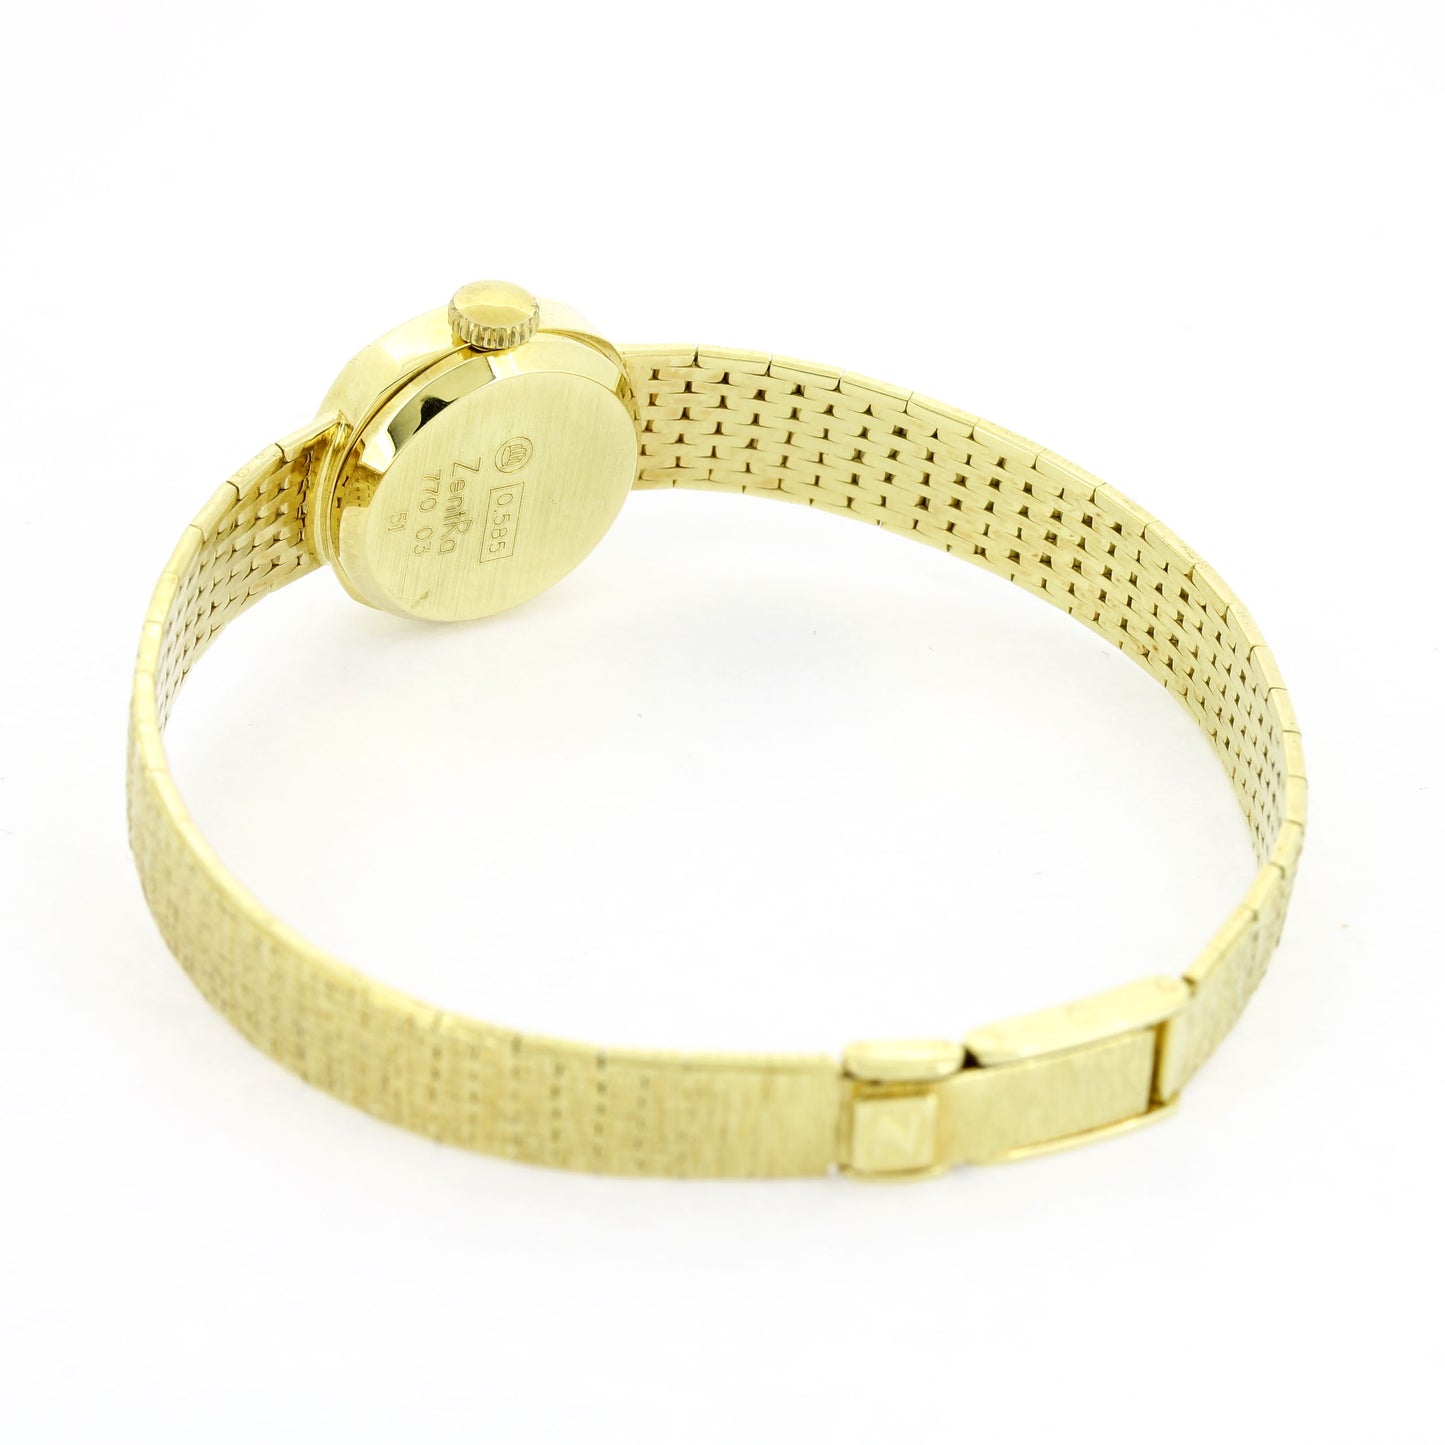 Zenta Armbanduhr Damen 585 Gold 14 Kt Handaufzug